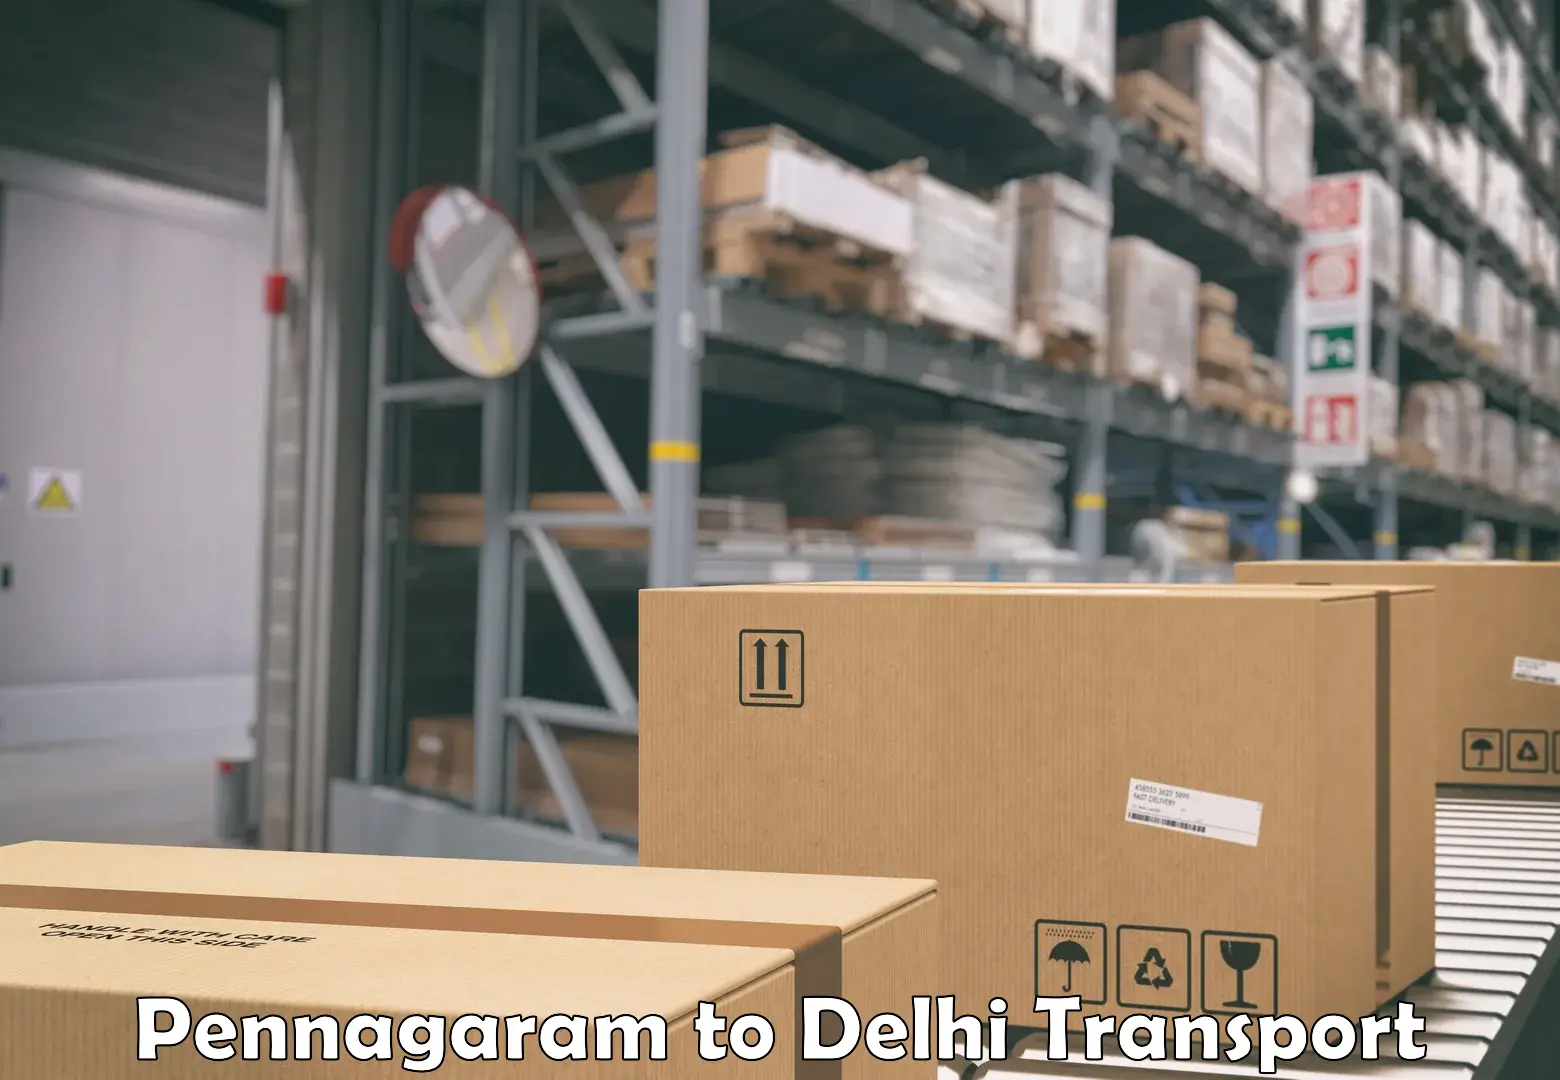 Shipping partner Pennagaram to IIT Delhi